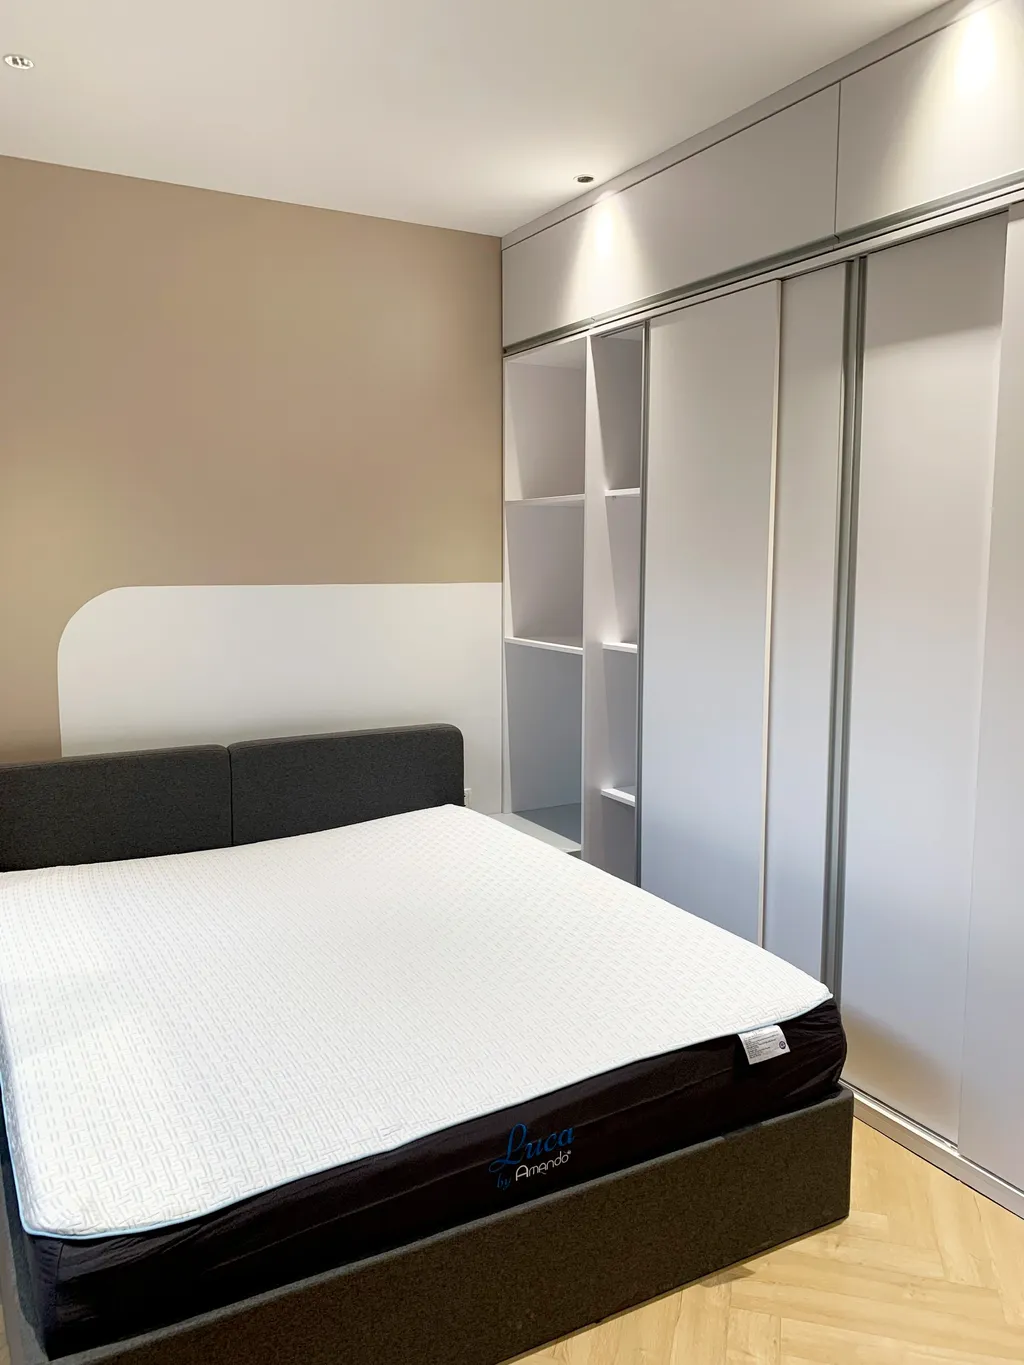 Hoàn thiện nội thất phòng ngủ Biệt thự Bình Chánh mang phong cách Modern hiện đại